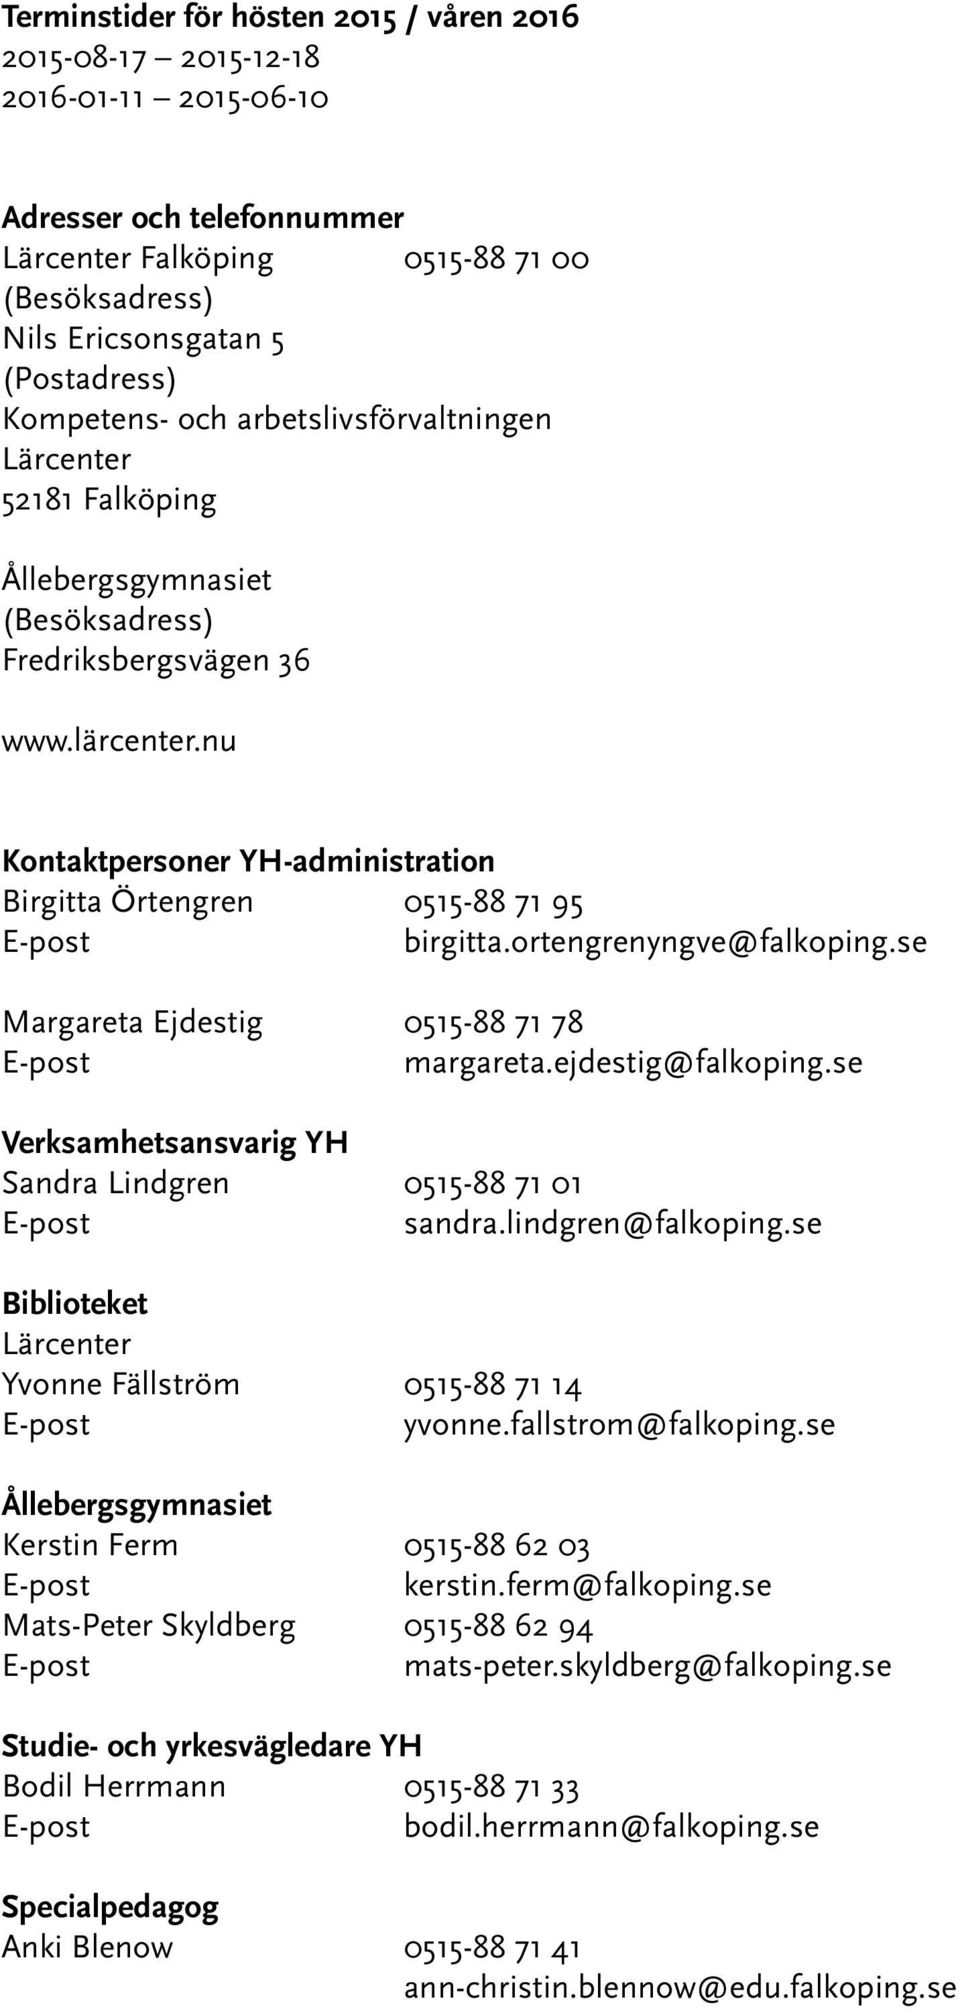 nu Kontaktpersoner YH-administration Birgitta Örtengren 0515-88 71 95 birgitta.ortengrenyngve@falkoping.se Margareta Ejdestig 0515-88 71 78 margareta.ejdestig@falkoping.